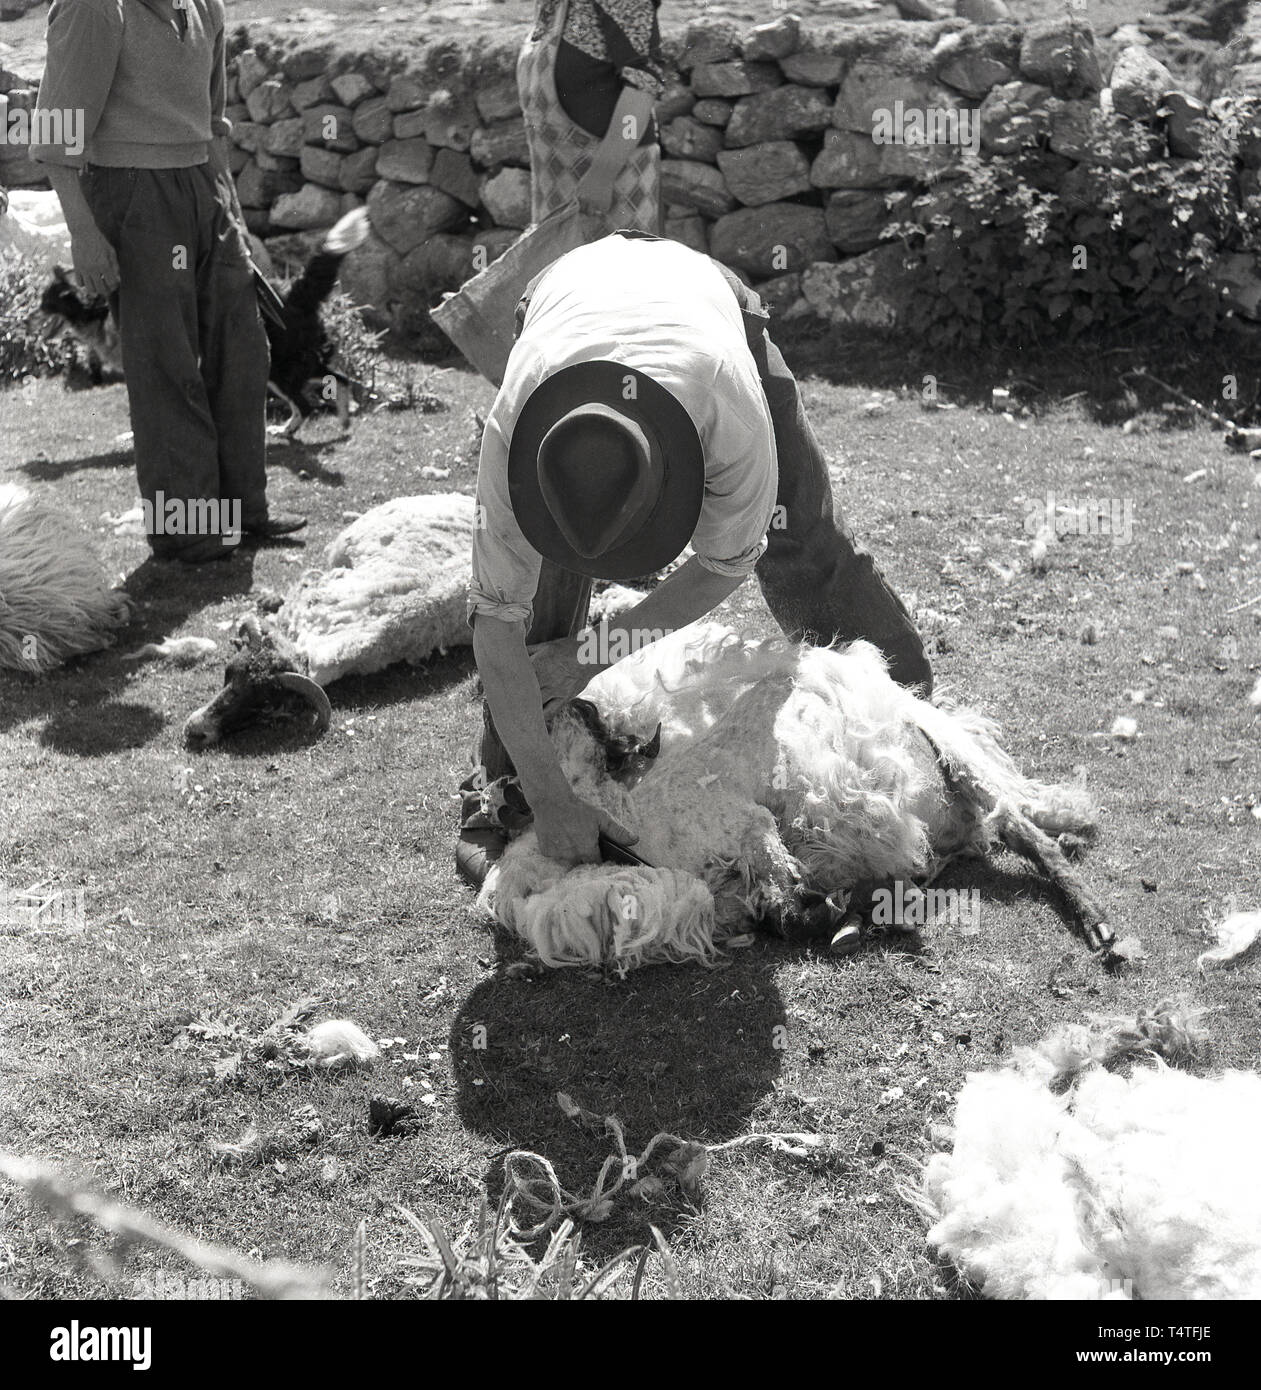 1960, historische, Schafe scheren, in einem stoneall Gehäuse. ein Bauer oder 57309 mit einer Schere oder Messer Scheren die Wolle weg von einem Schaf, England, UK. Stockfoto